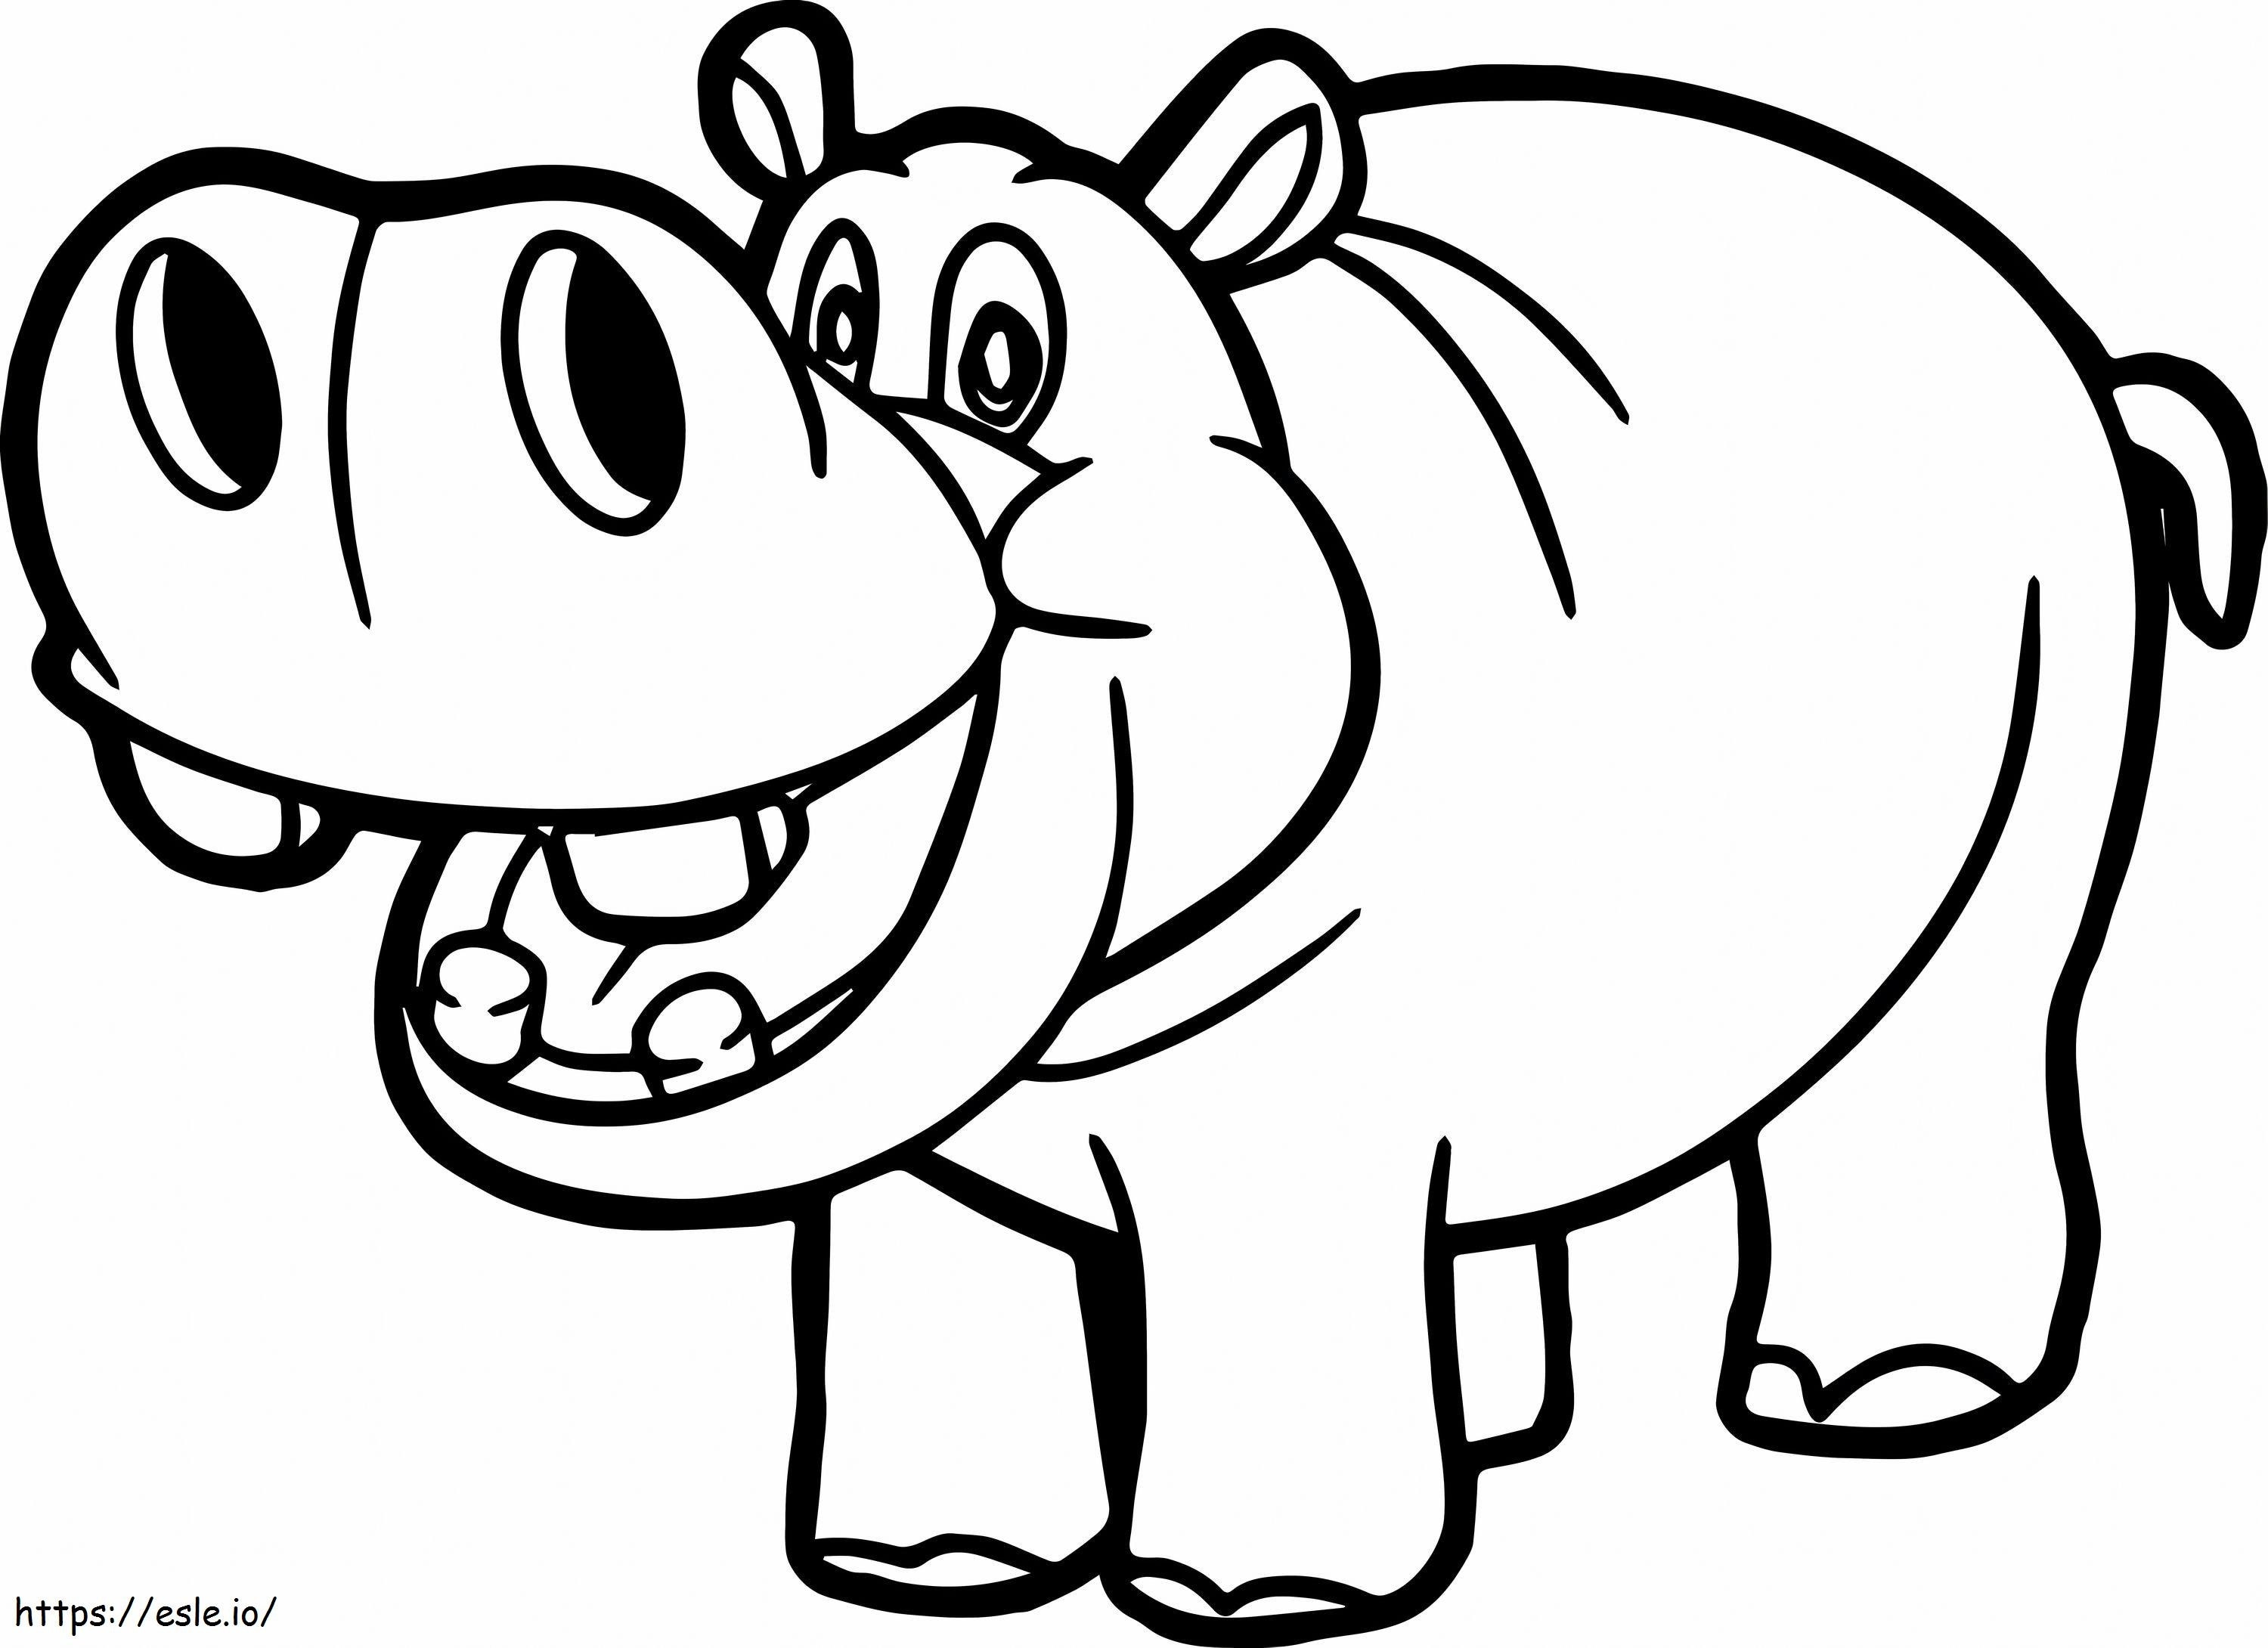 1548128583 Nijlpaarden Luxe Hippo-overzichtstekening bij Getdrawings of Hippopotamuses kleurplaat kleurplaat